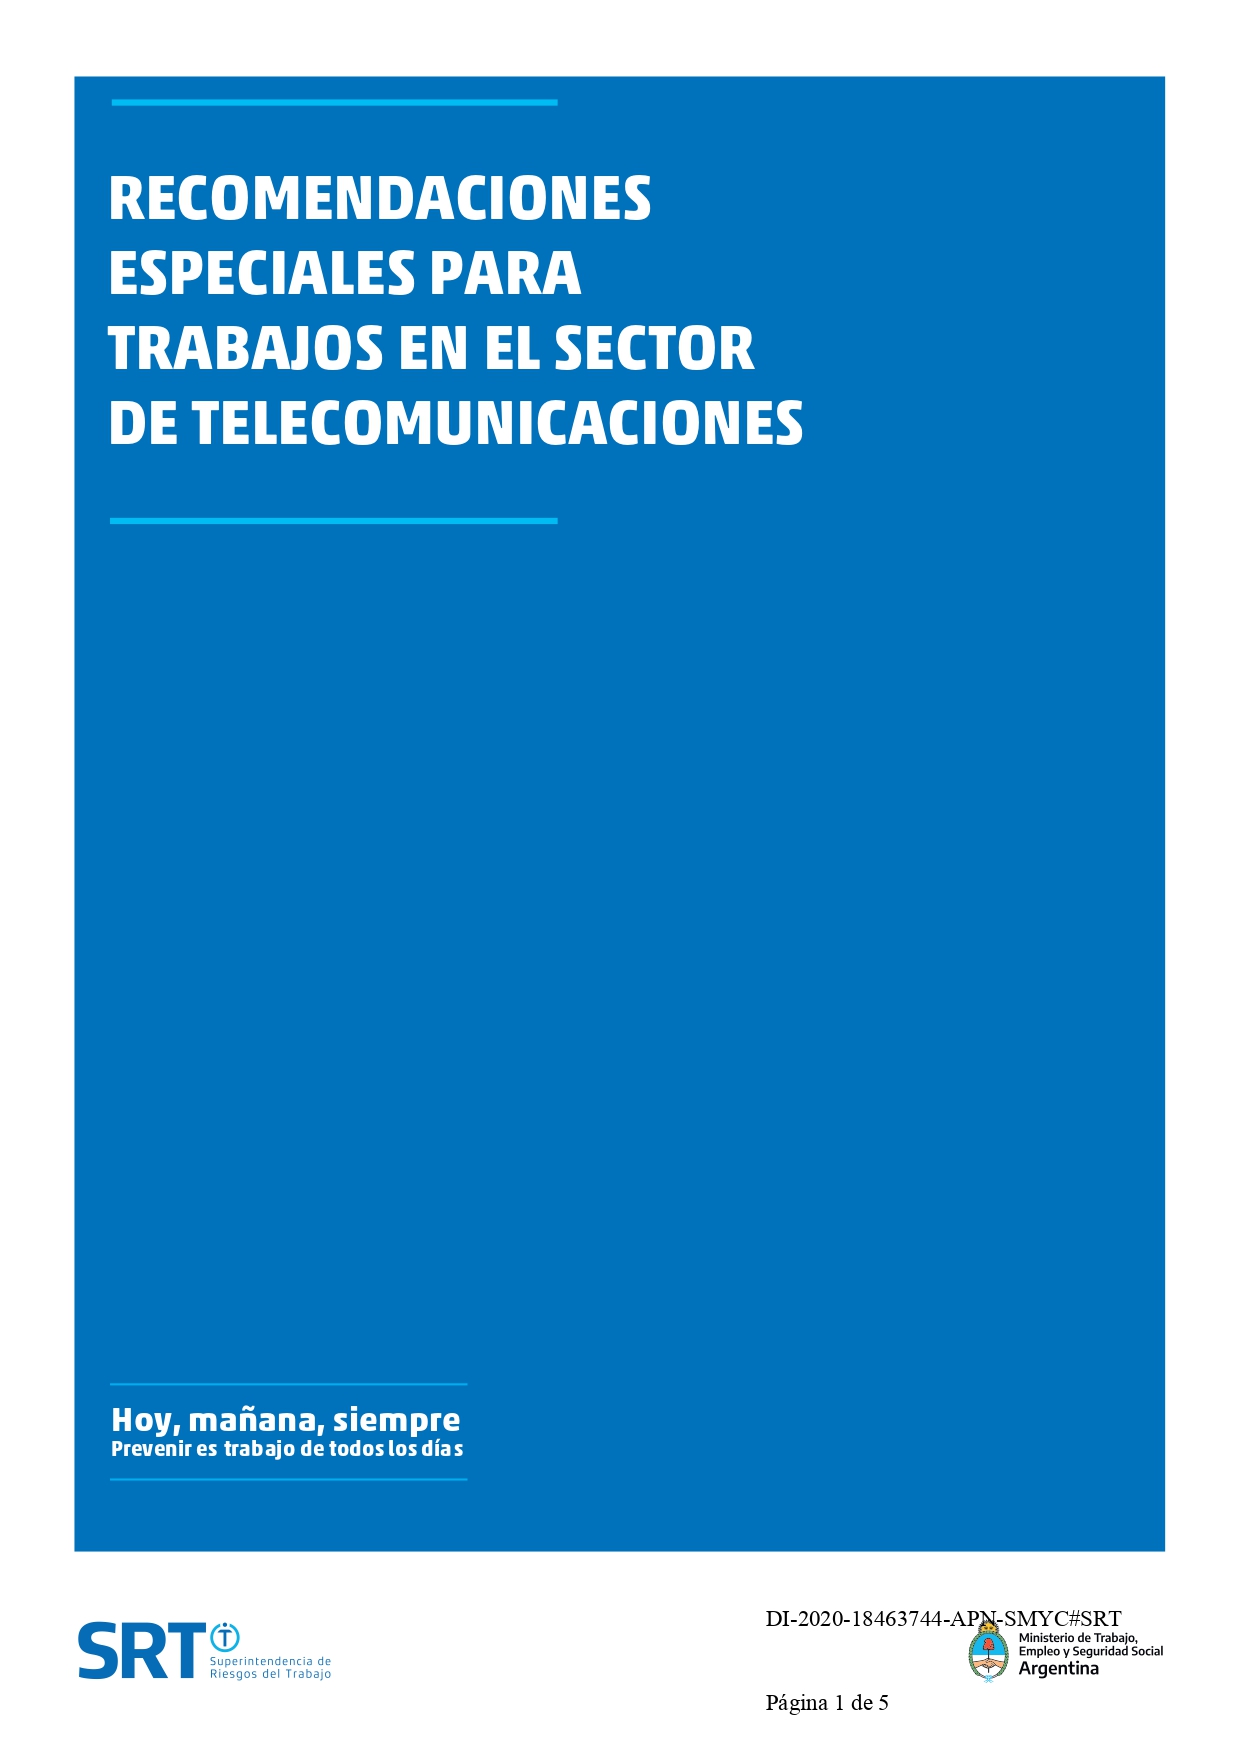 RECOMENDACIONES ESPECIALES PARA TRABAJOS EN EL SECTOR DE TELECOMUNICACIONES